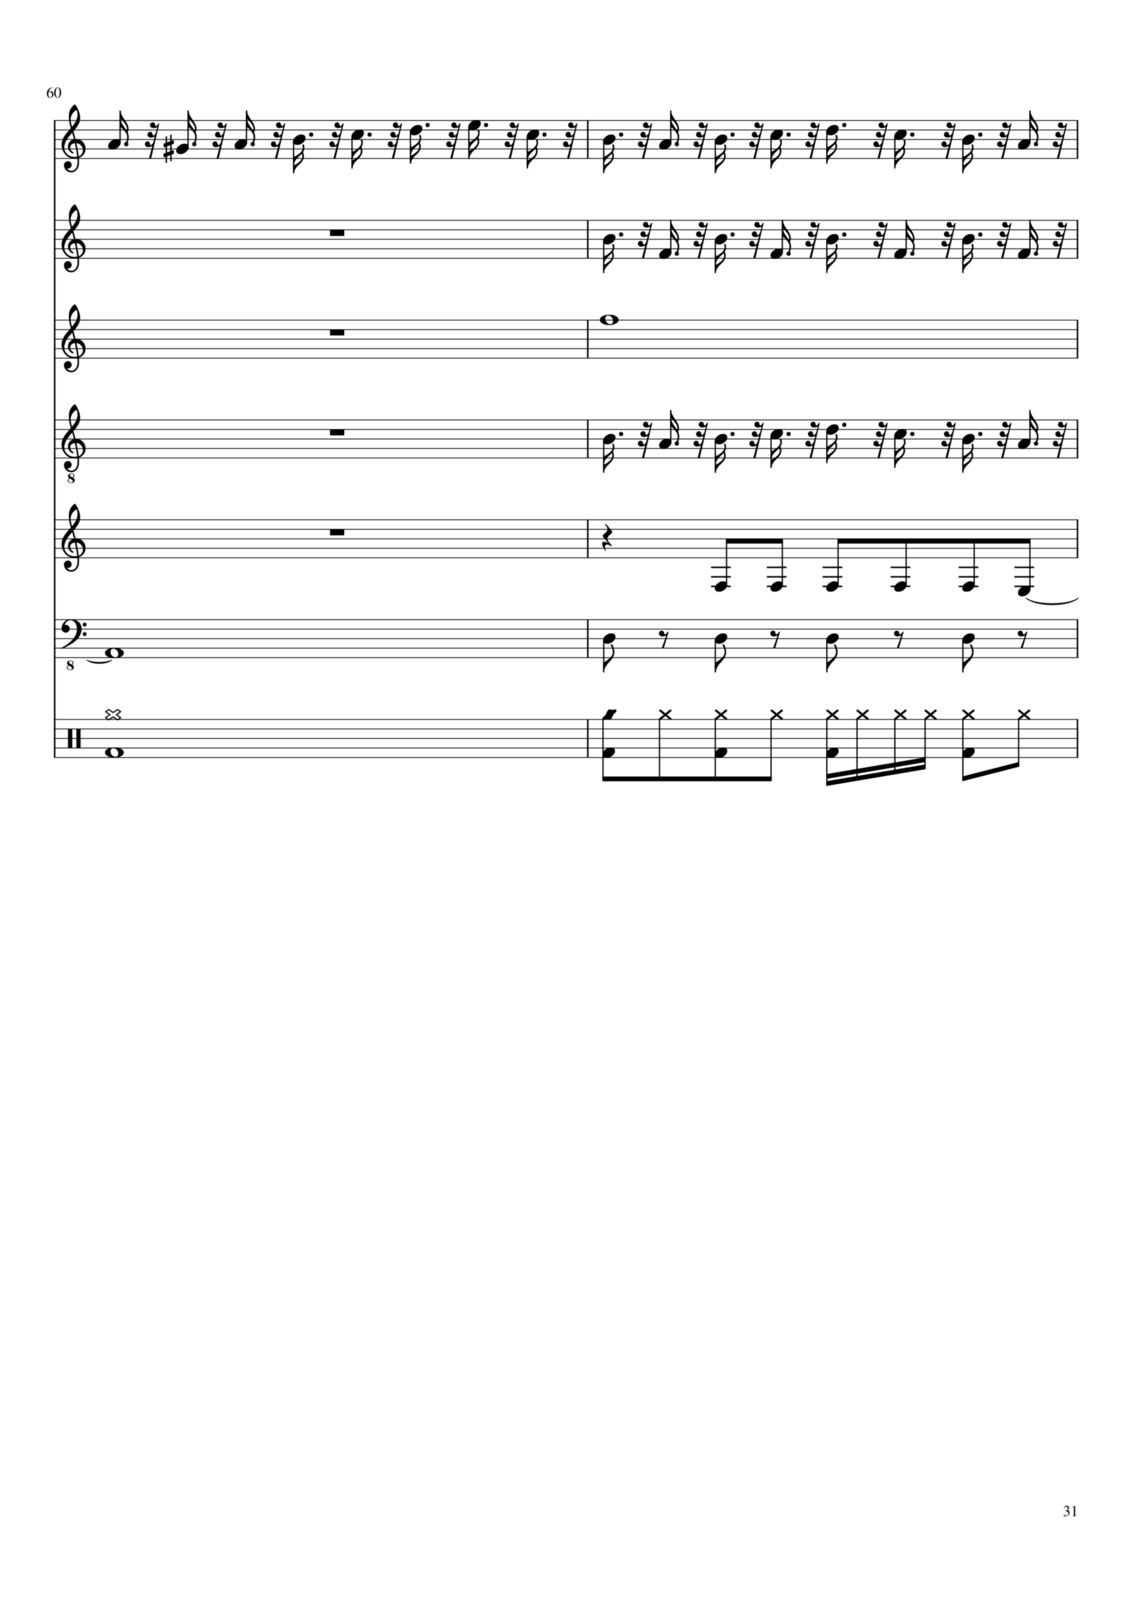 Vechnaya molodost slide, Image 8